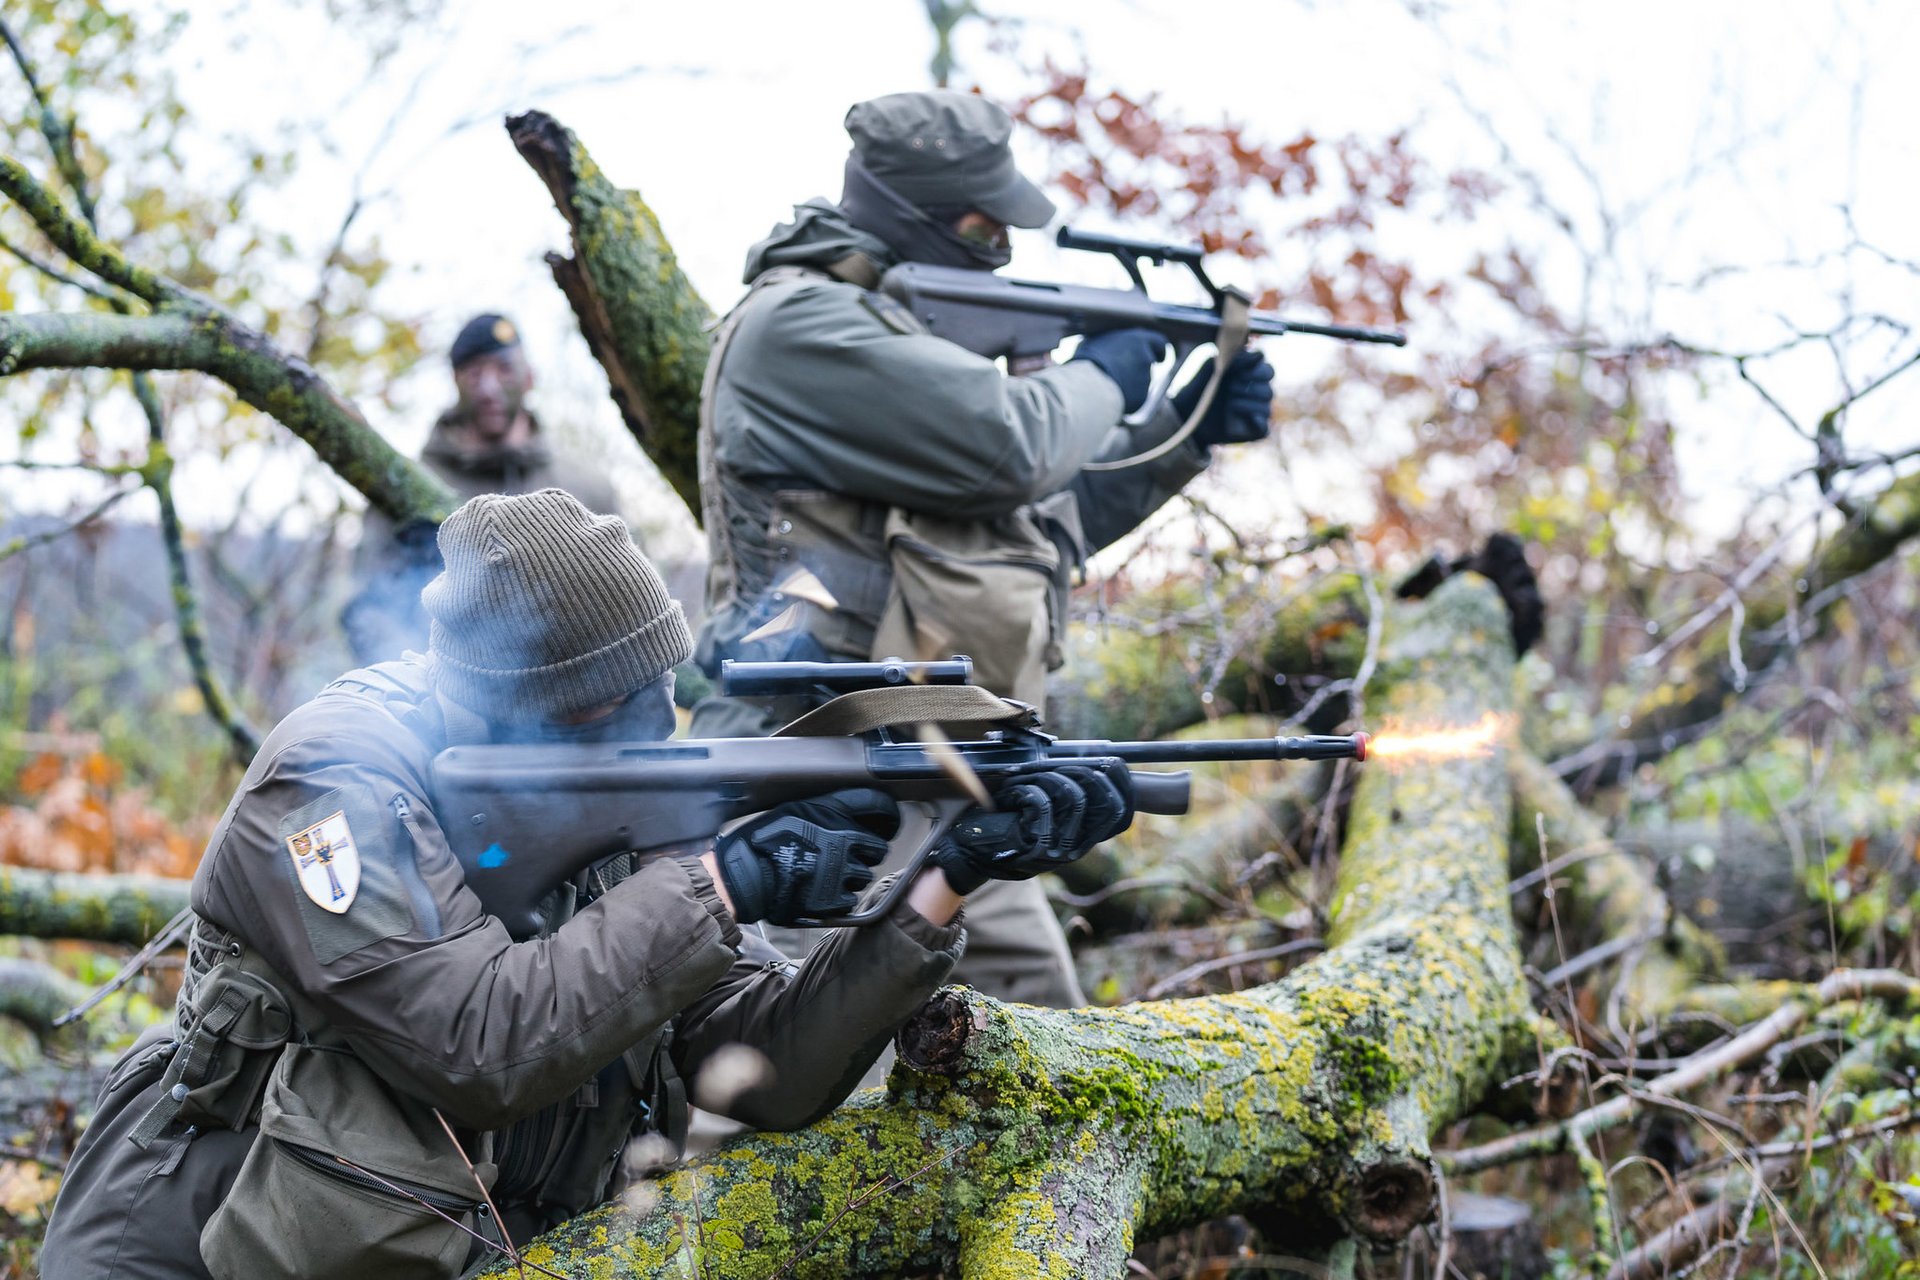 Milizsoldaten des Jägerbataillons Wien 1 schießen mit ihren Sturmgewehren.